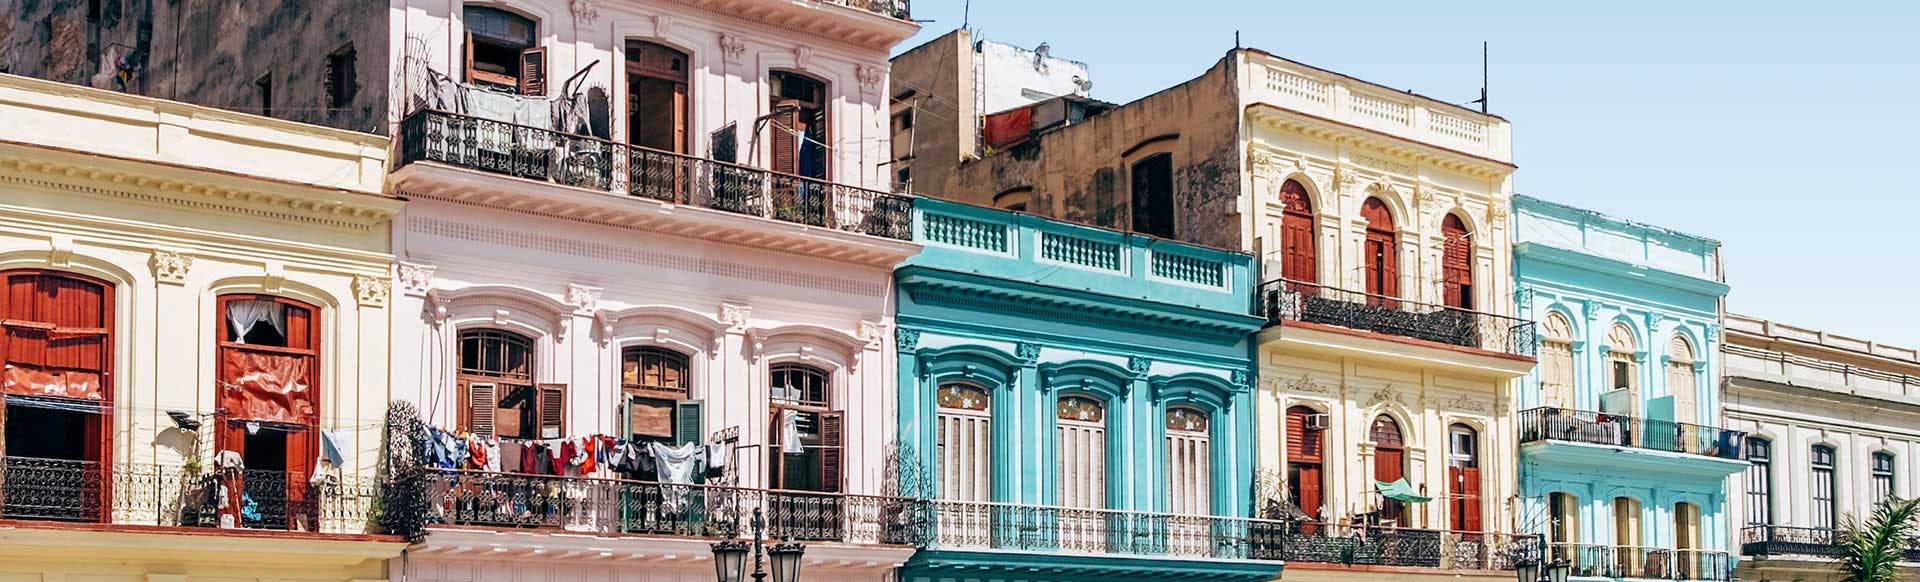 Search Hotels in Cuba